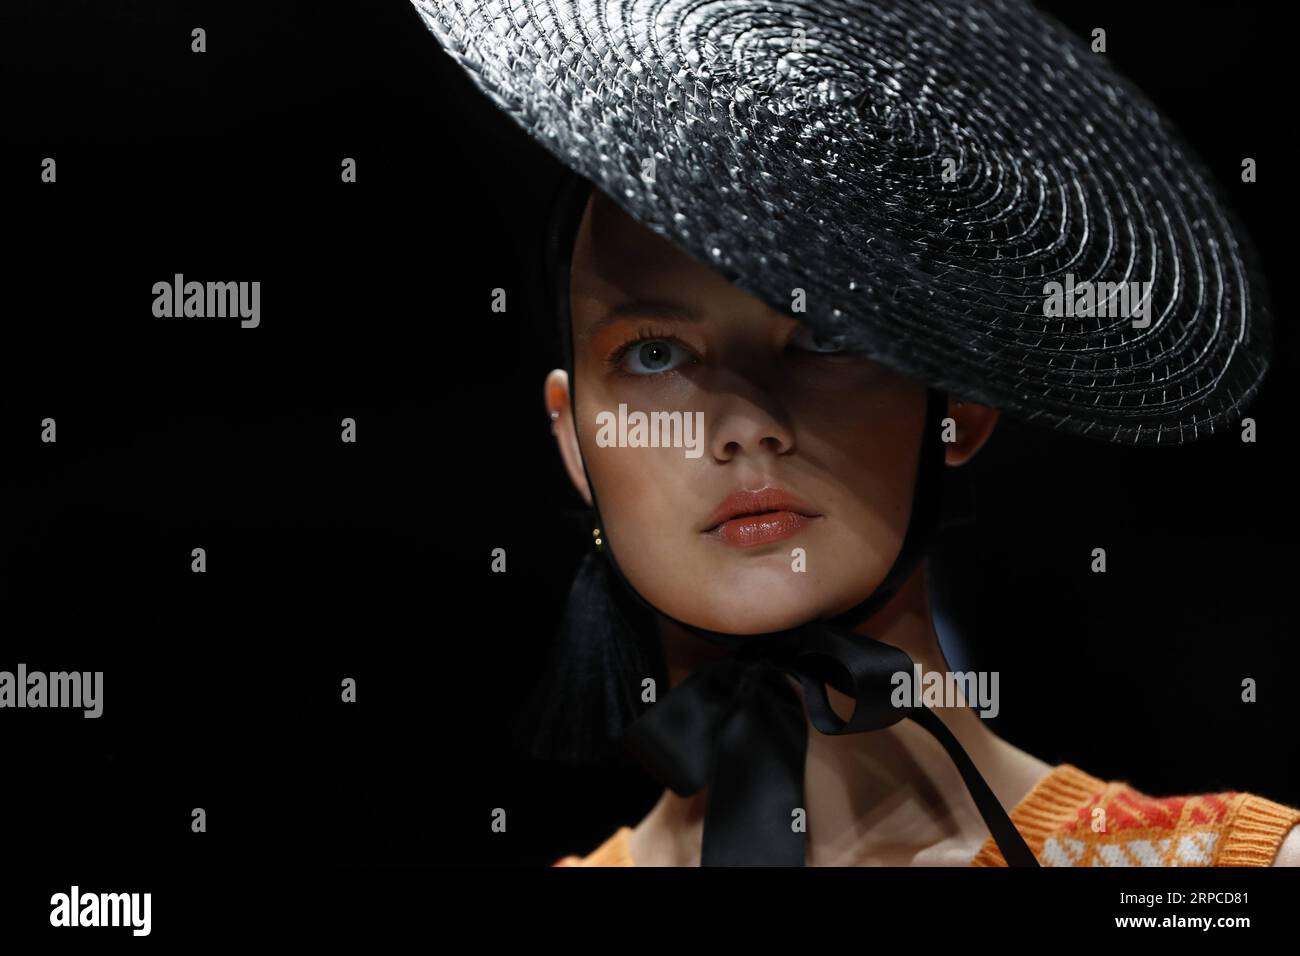 (190701) -- BERLIN, 1. Juli 2019 (Xinhua) -- Ein Modell präsentiert eine Kreation des Designers Danny Reinke während der Berlin Fashion Week Frühjahr/Sommer 2020 in Berlin, Hauptstadt Deutschlands, am 1. Juli 2019. (Xinhua/Binh Truong) DEUTSCHLAND-BERLIN-FASHION WEEK-DANNY REINKE PUBLICATIONxNOTxINxCHN Stockfoto